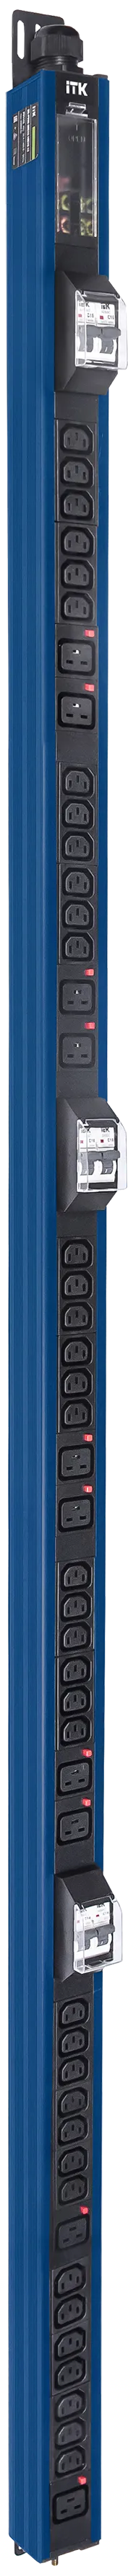 ITK BASE PDU вертикальный PV1113 45U 3 фазы 32А 38 розеток C13 + 10 розеток C19 с клеммной колодкой и кабелем 6м вилка IEC60309 (промышленная) синий